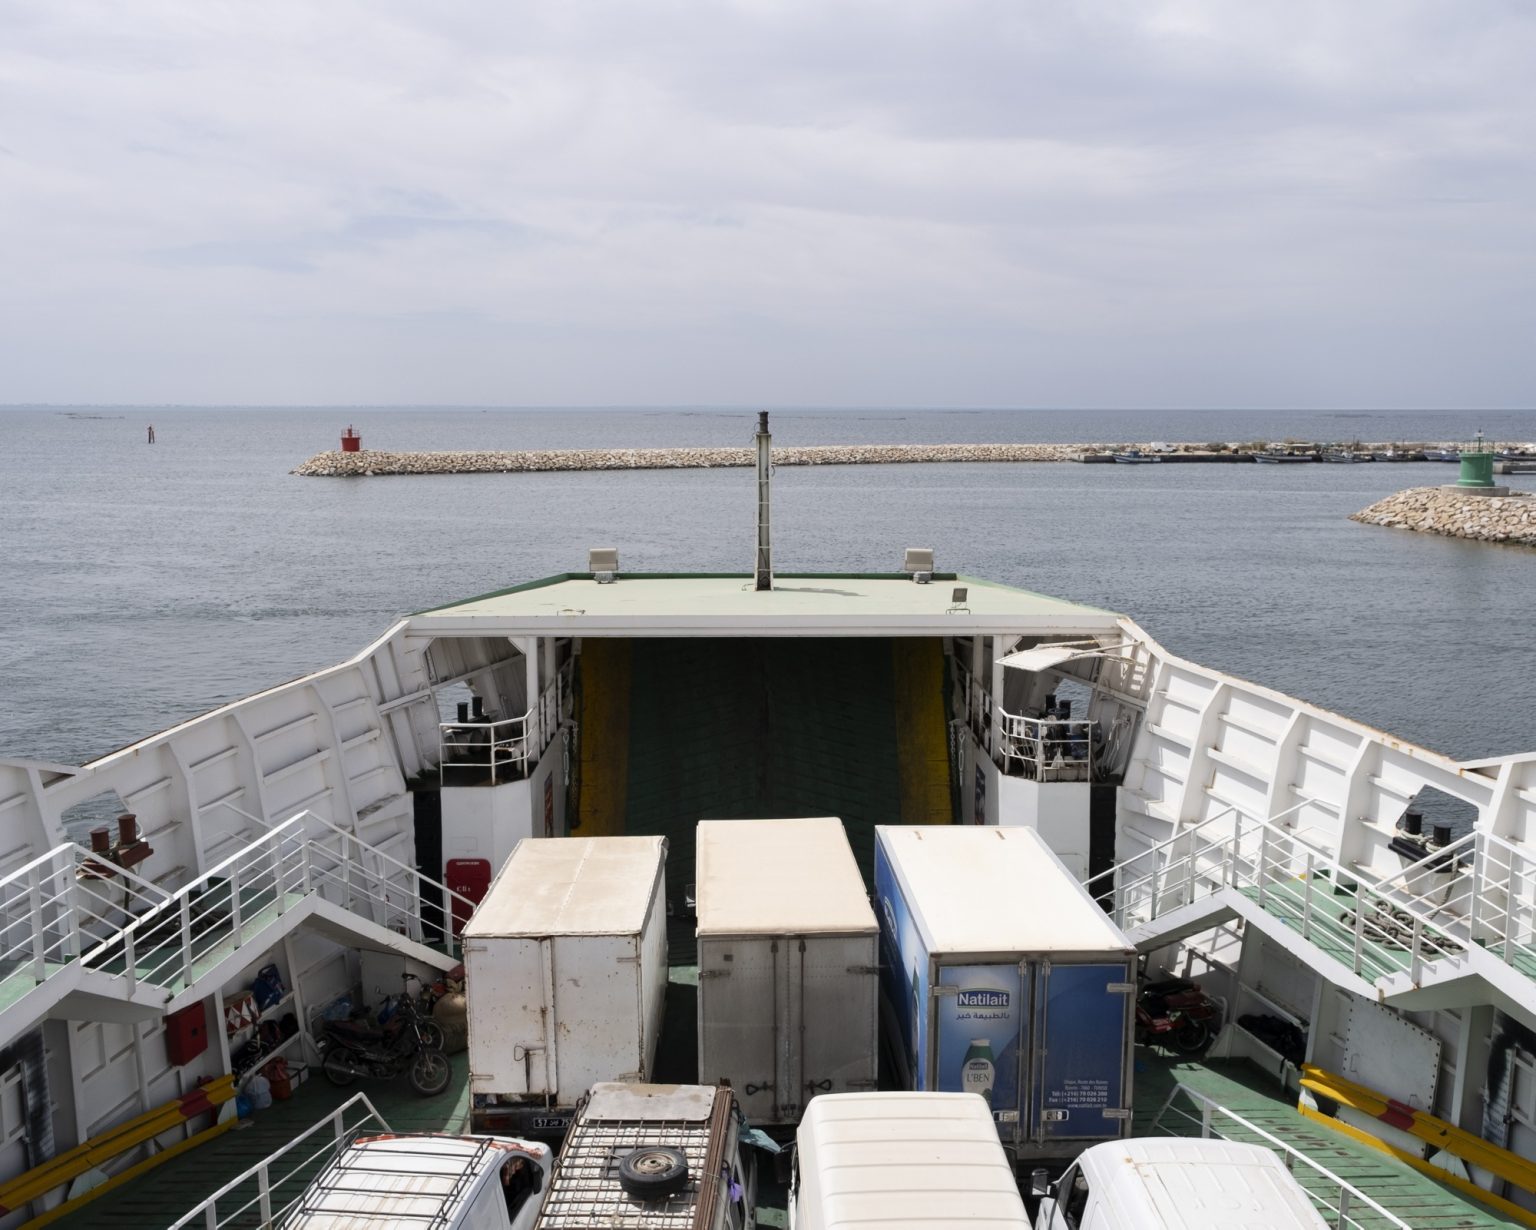 Kerkennah Islands (Tunisia), June 2022 - A ferry leaving the port
><
Isole Kerkennah (Tunisia), giugno 2022  - Un traghetto in partenza dal porto